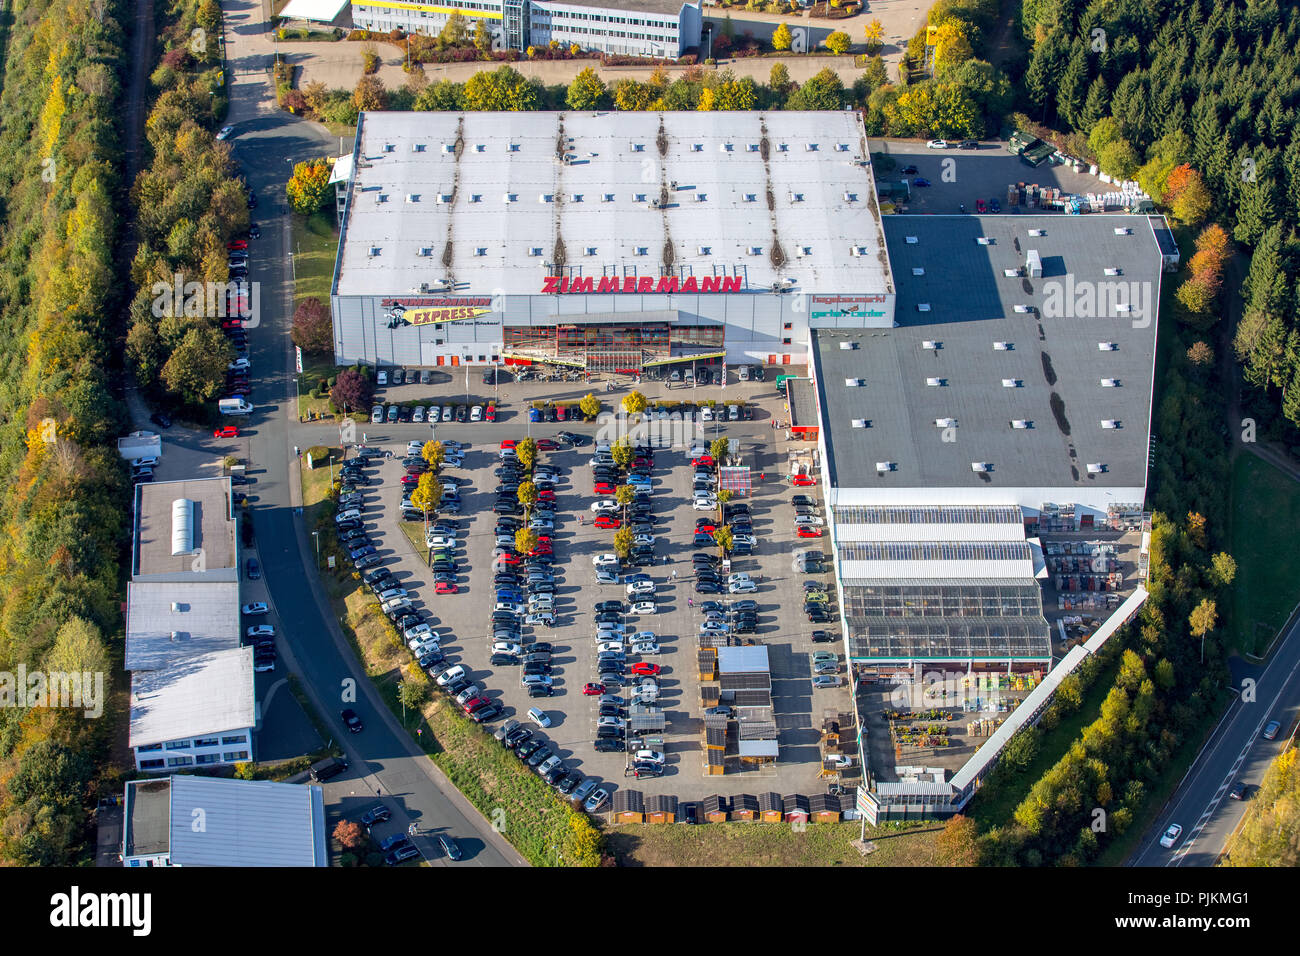 Vue aérienne, la société Möbel GmbH & Co. KG, Hagebaumarkt Freudenberg, les zones commerciales sur l'autoroute a45, Freudenberg Freudenberg, Düren, Rhénanie du Nord-Westphalie, Allemagne Banque D'Images